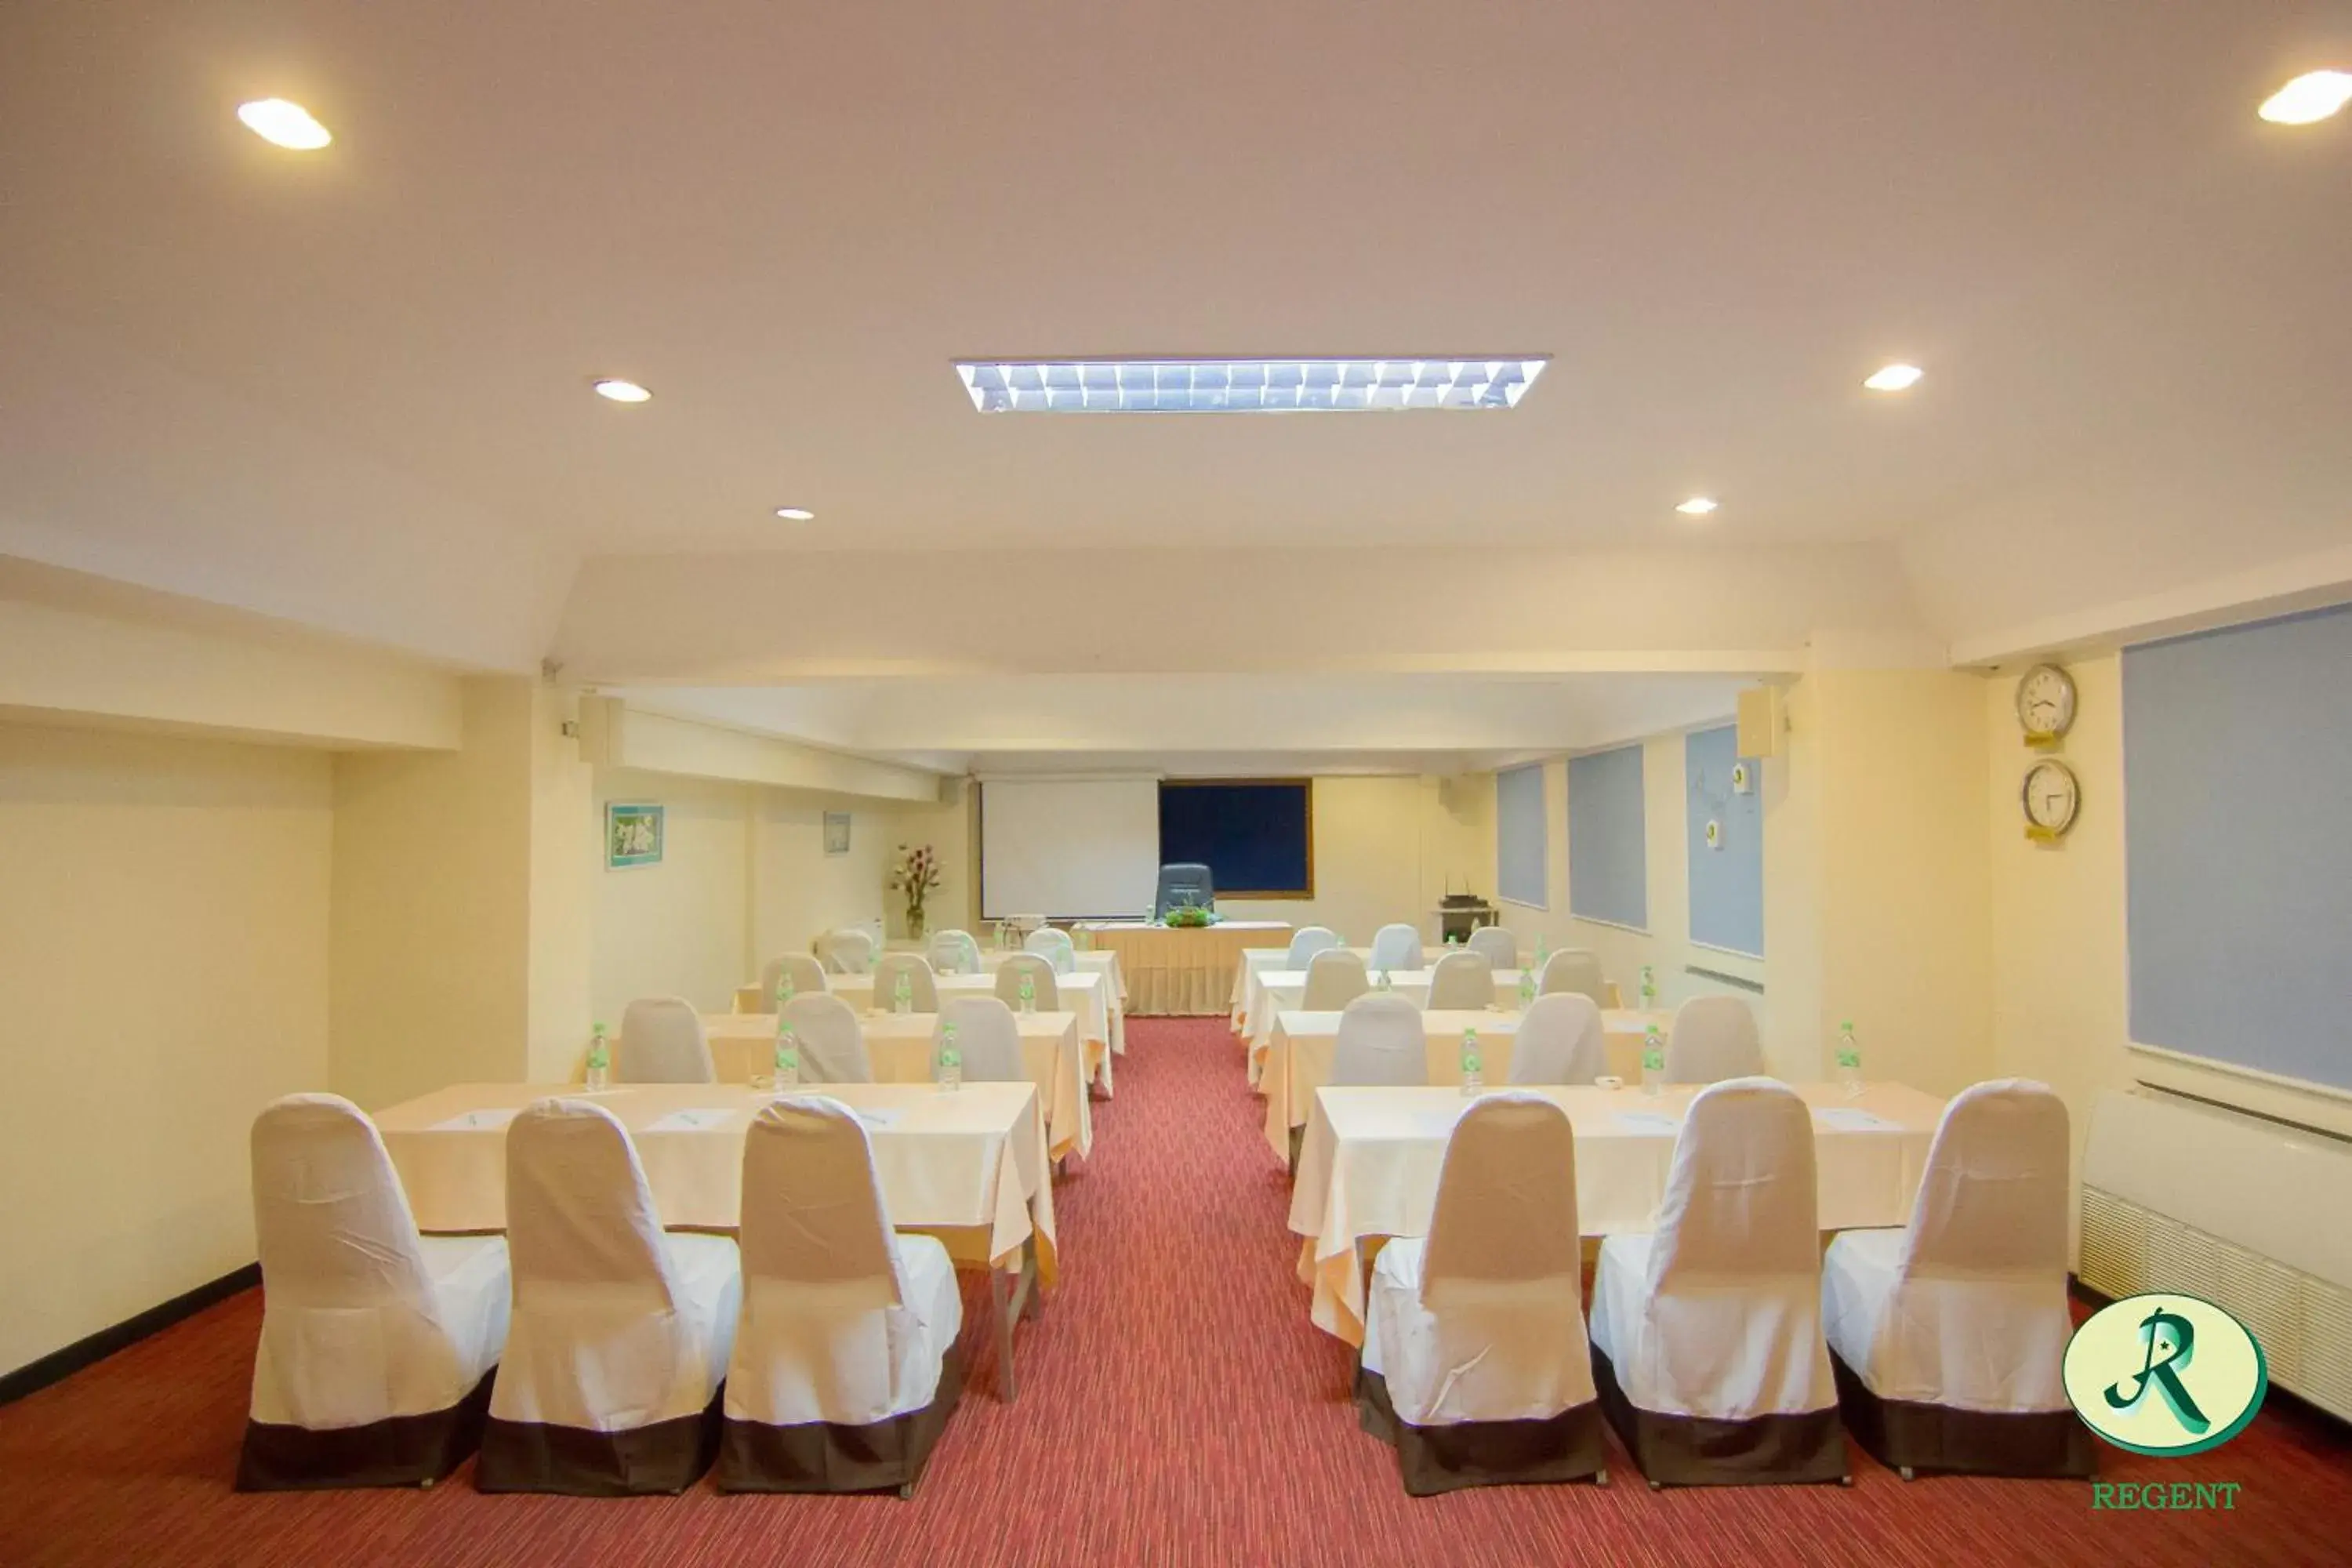 Banquet/Function facilities, Banquet Facilities in Regent Ramkhamhaeng 22